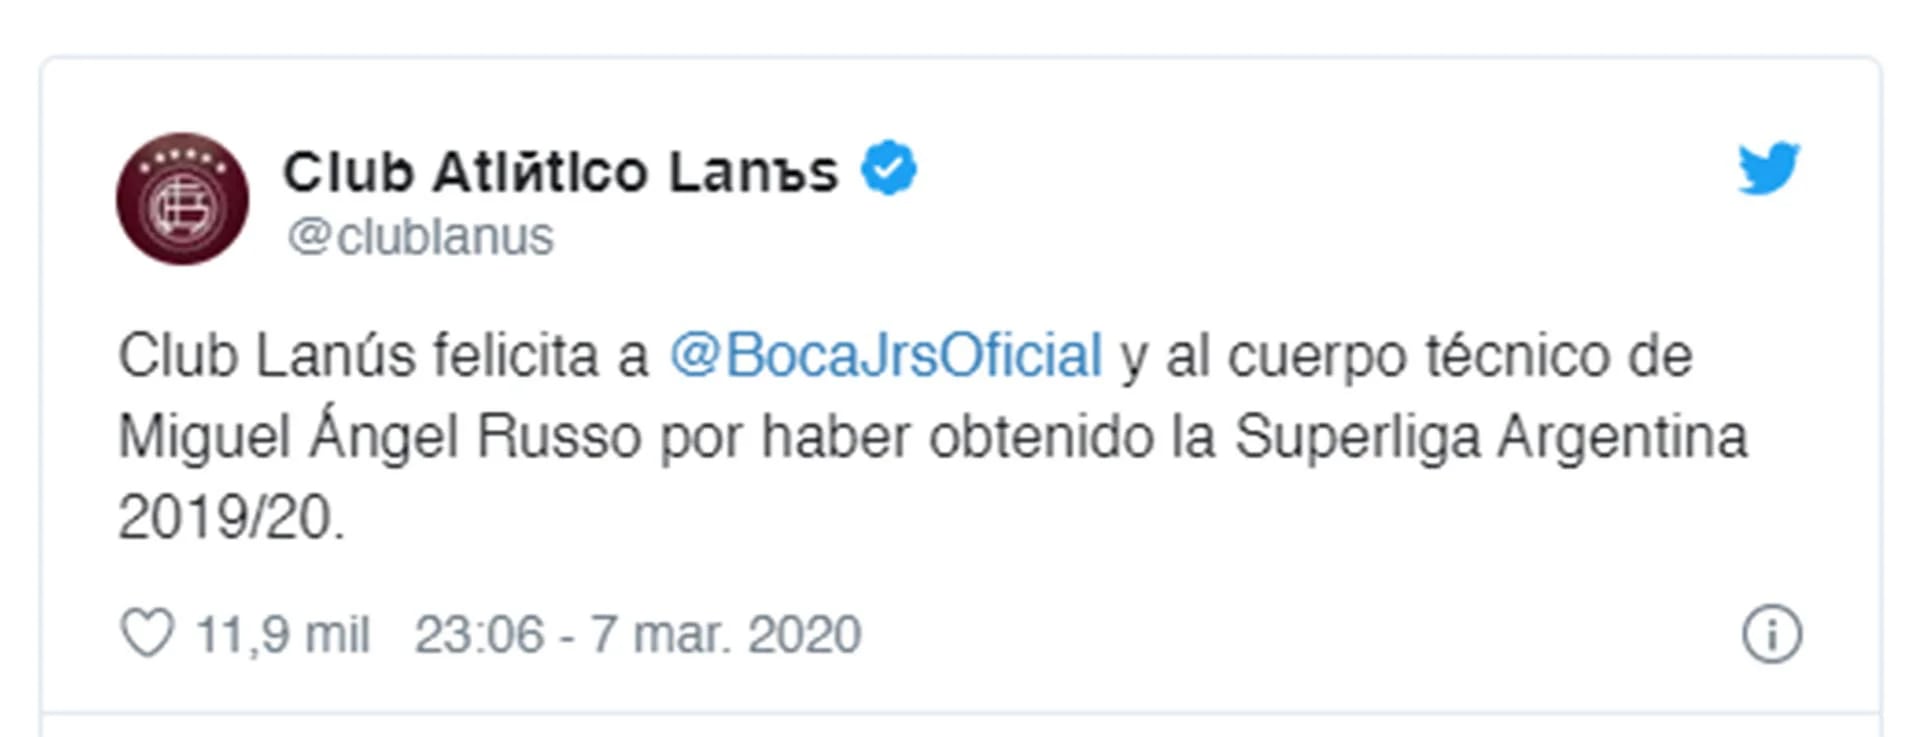 El mensaje de Lanús a Boca por campeonato logrado